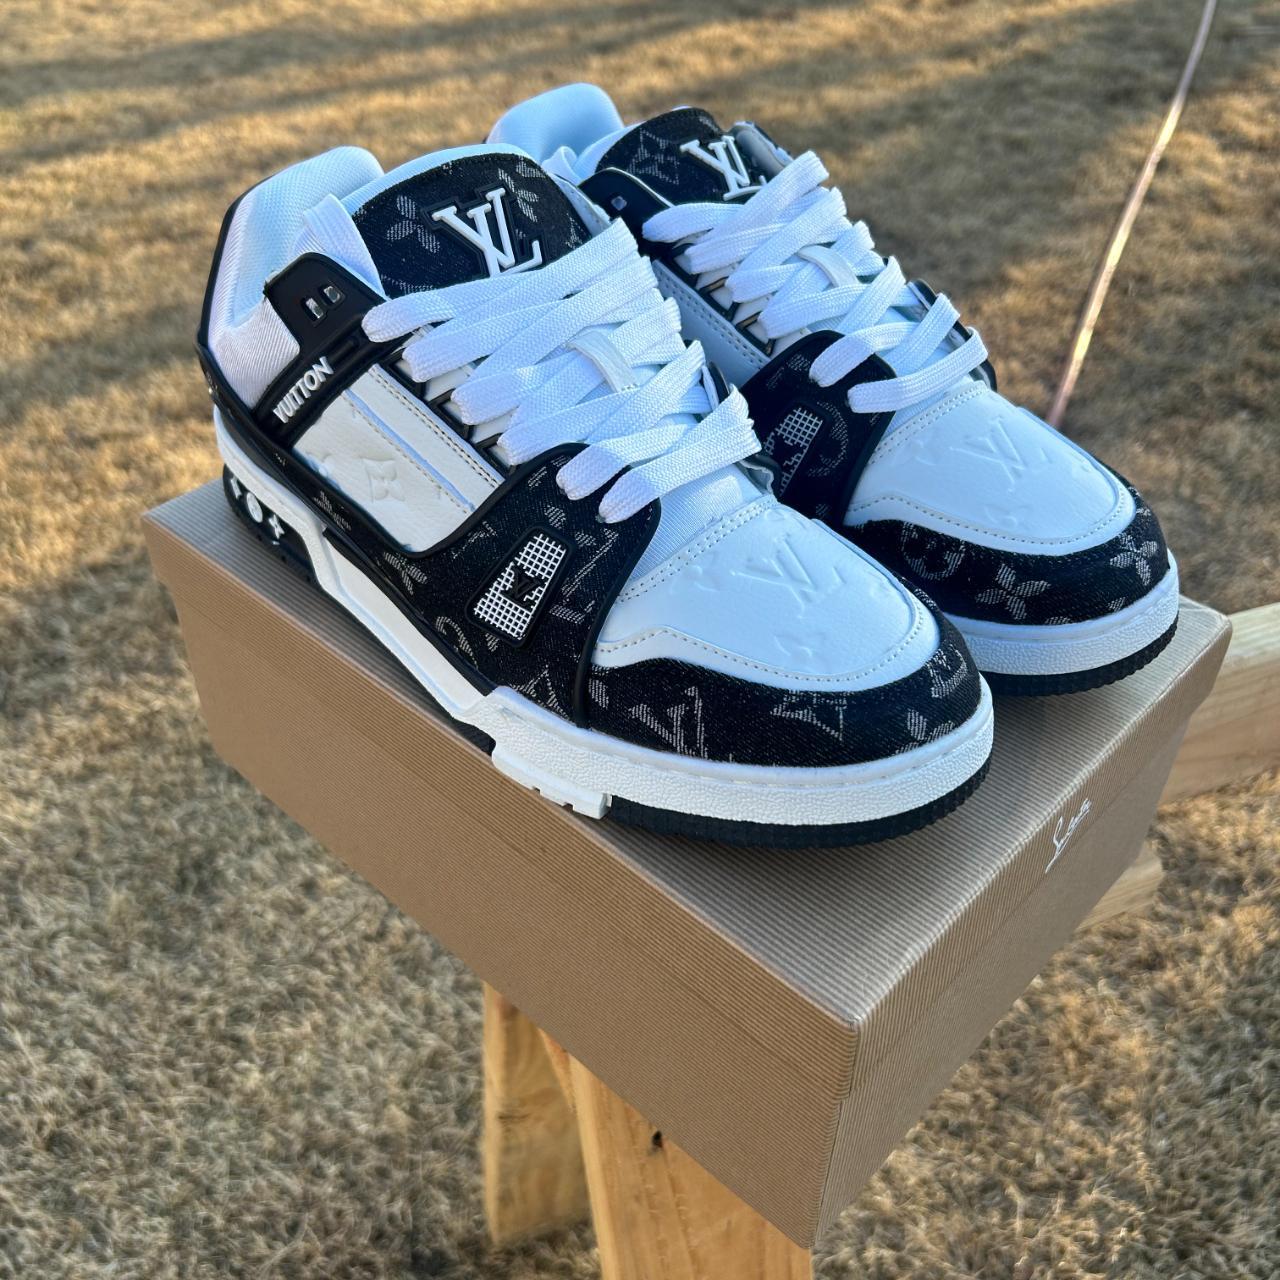 Louis Vuitton LV Black Trainer Sneakers Size US... - Depop